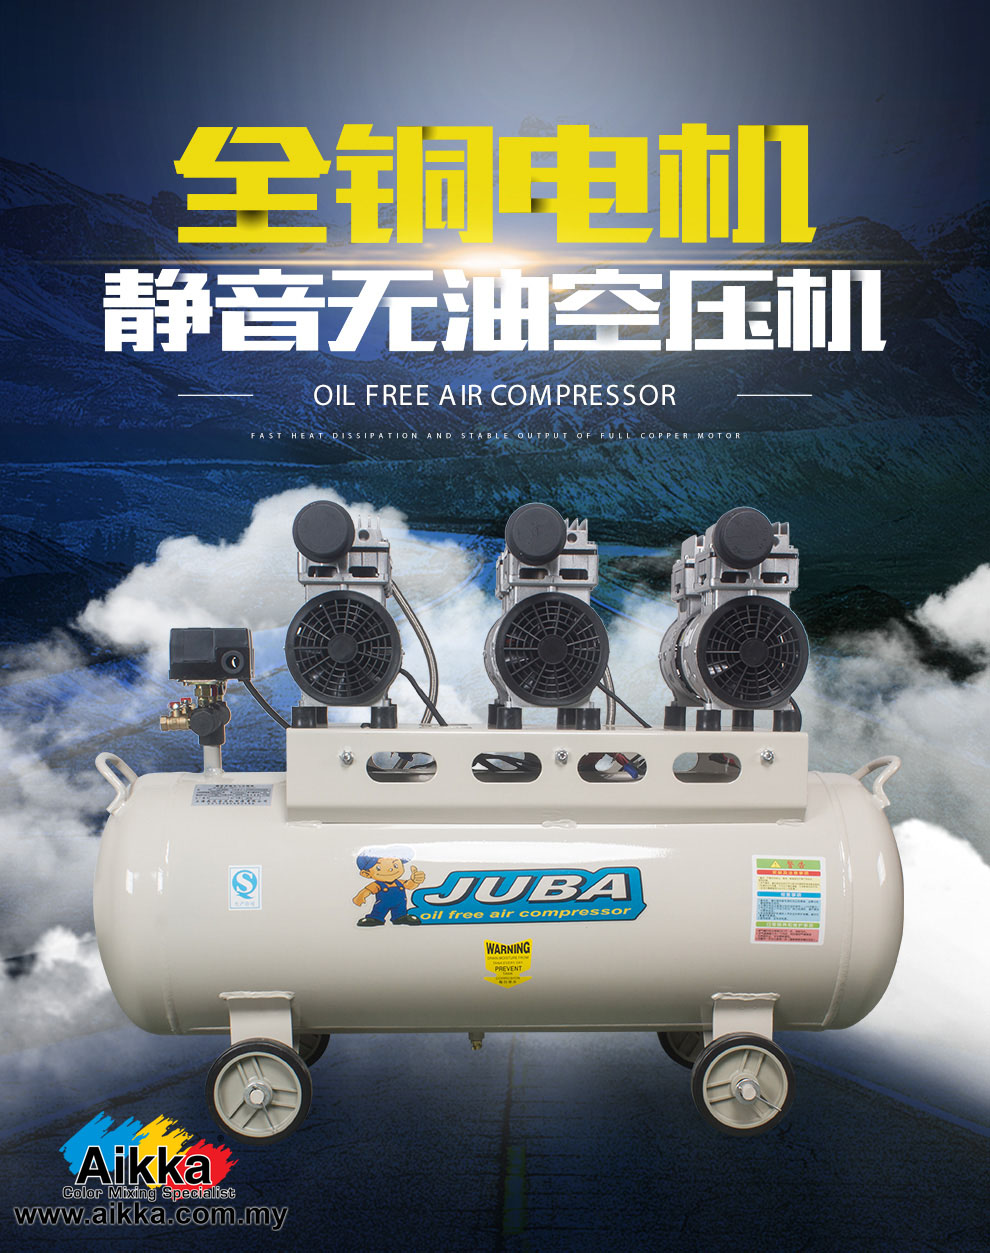 JUBA Mute Oil-free Air compressor 800w x 3 80L